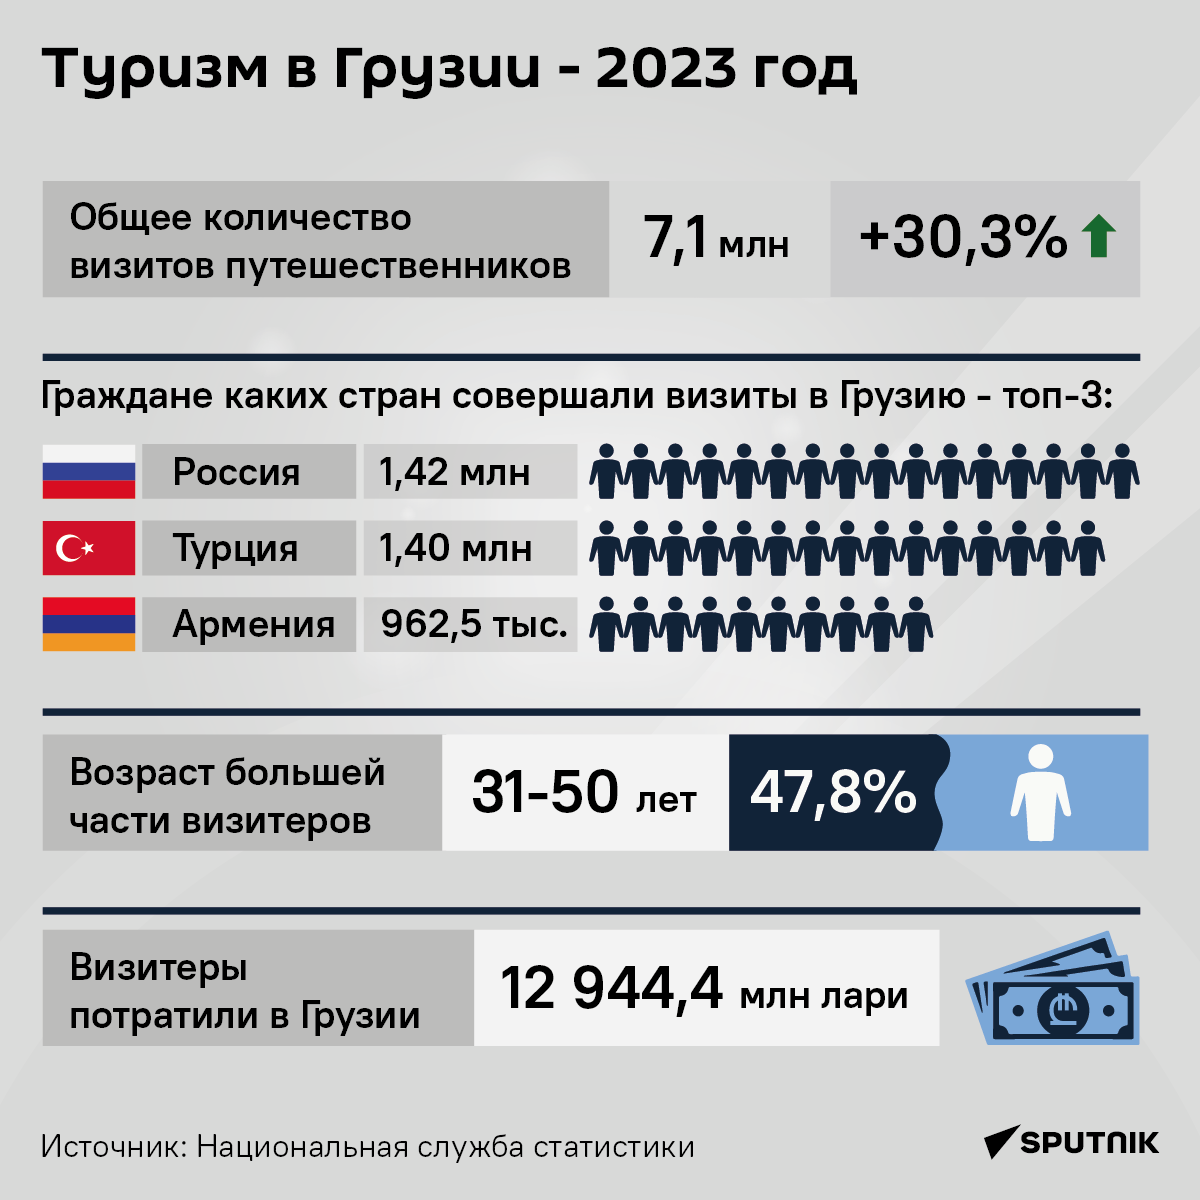 Туризм в Грузии 2023 - инфографика - Sputnik Грузия